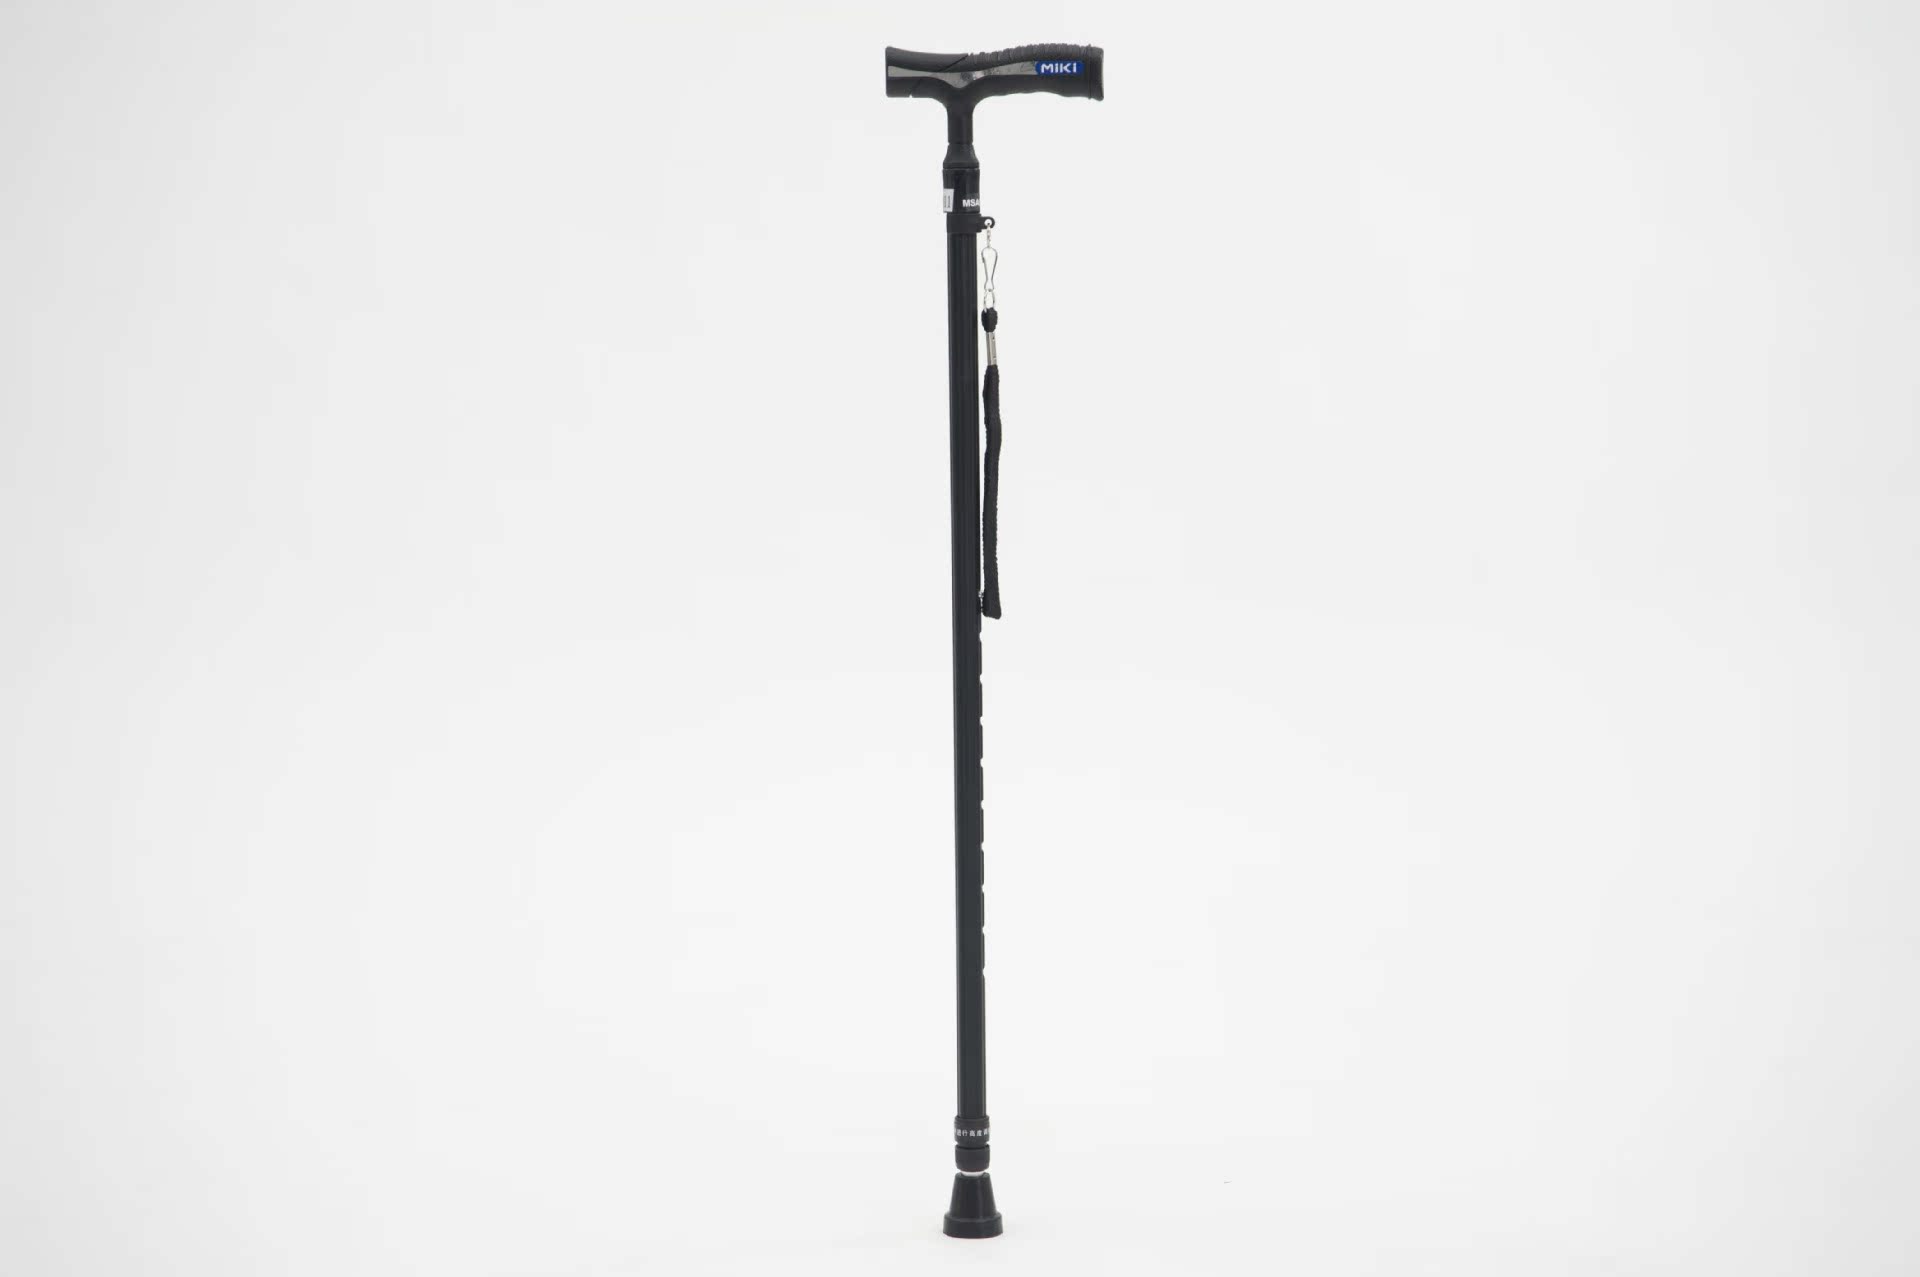 miki三贵手杖mra011老人拐杖航太铝材质可调节高度